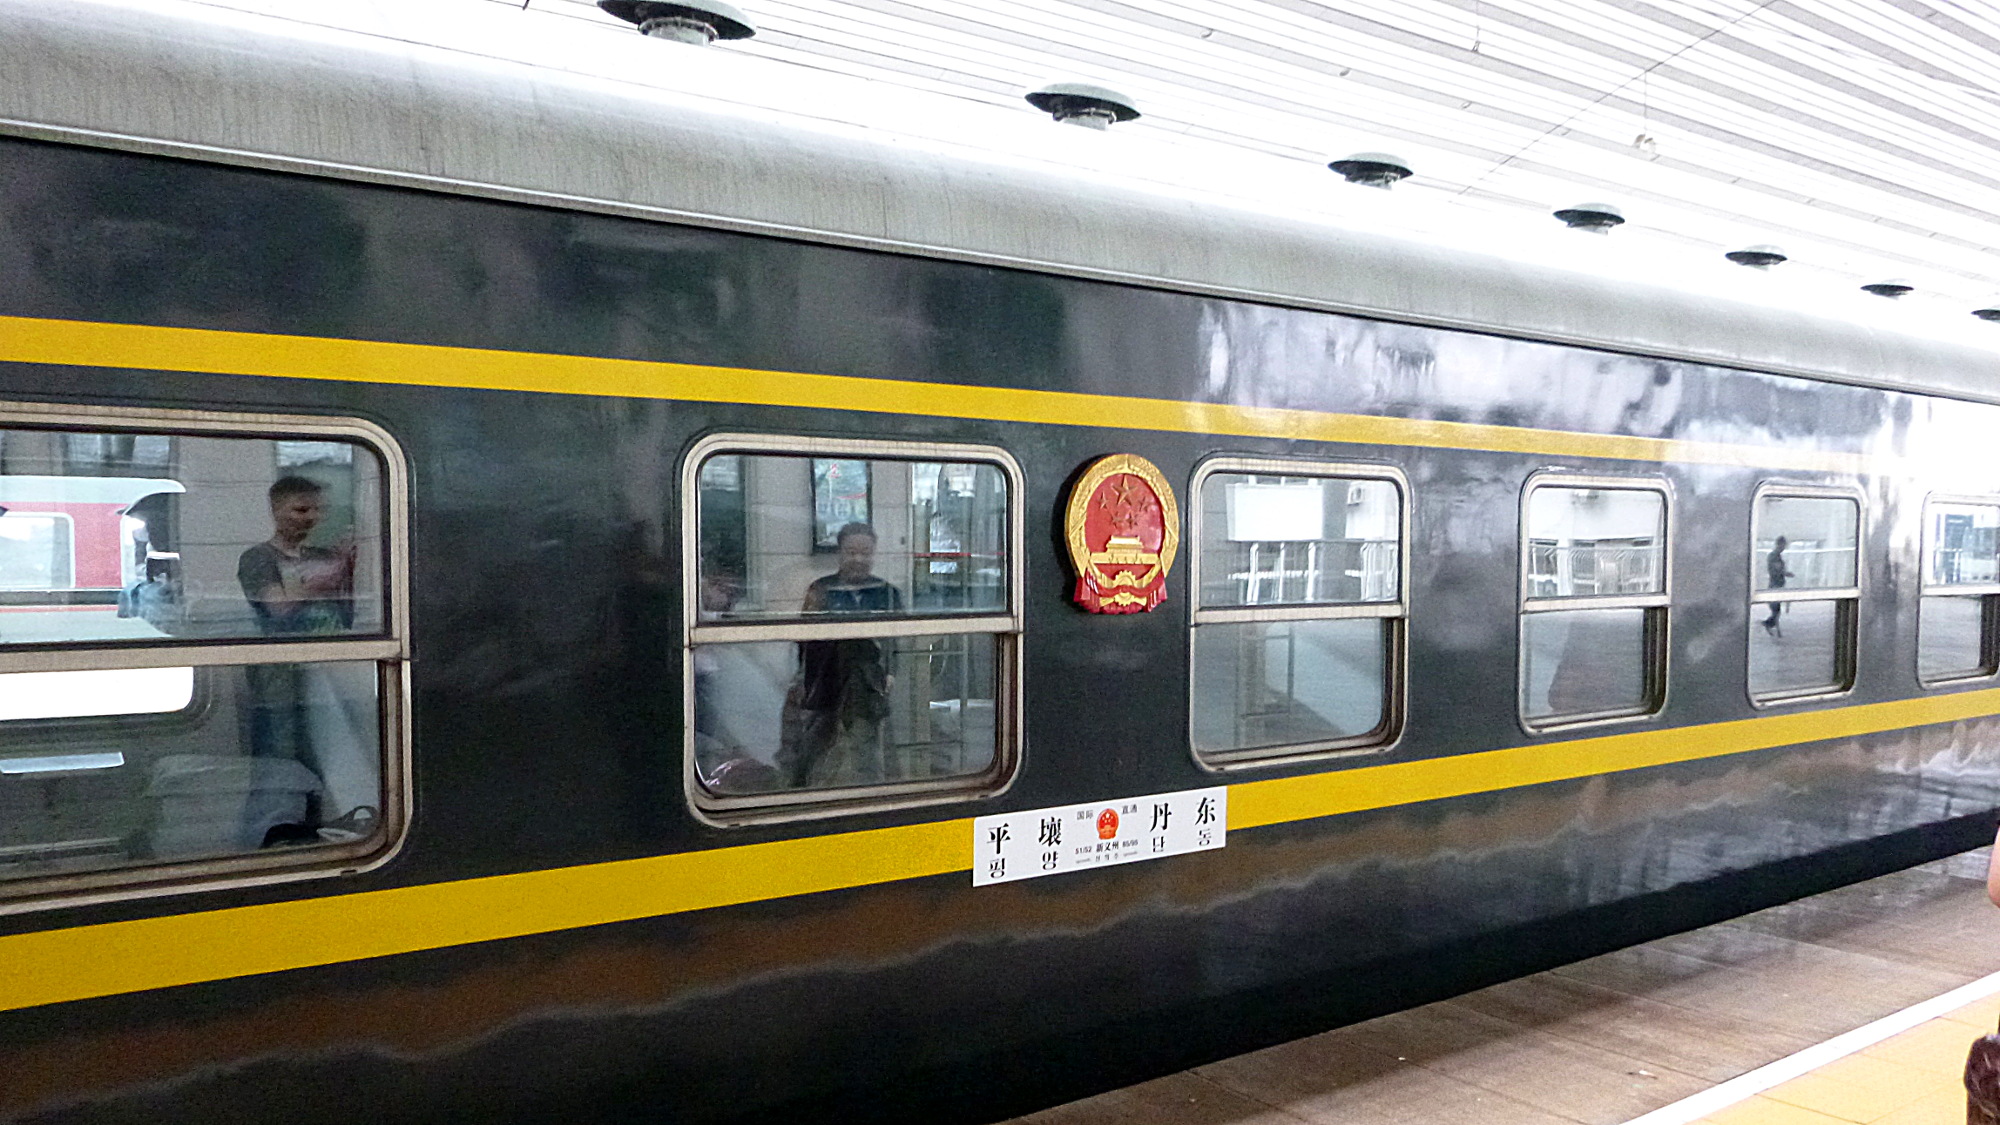 North Korea travel experiences. Train from Dangdong, China to North Korea, Pyongyang.